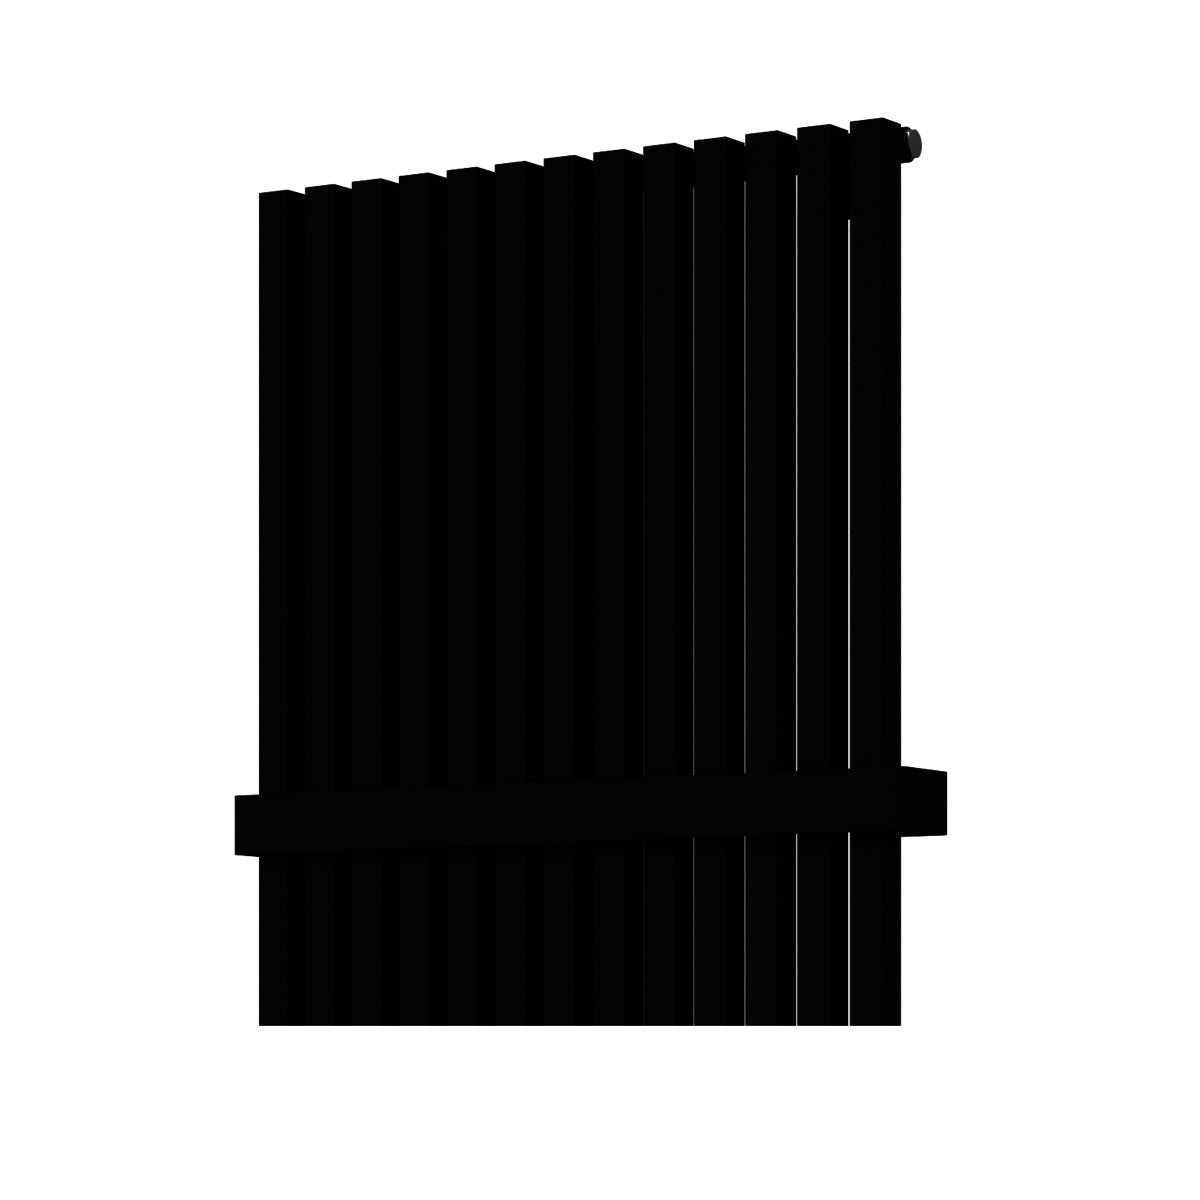 Radiatorji DOCT15000462CSM ISAN Octava 150 cm x 46 cm kopalniški radiator klasični | KOPALNICA-ONLINE.SI